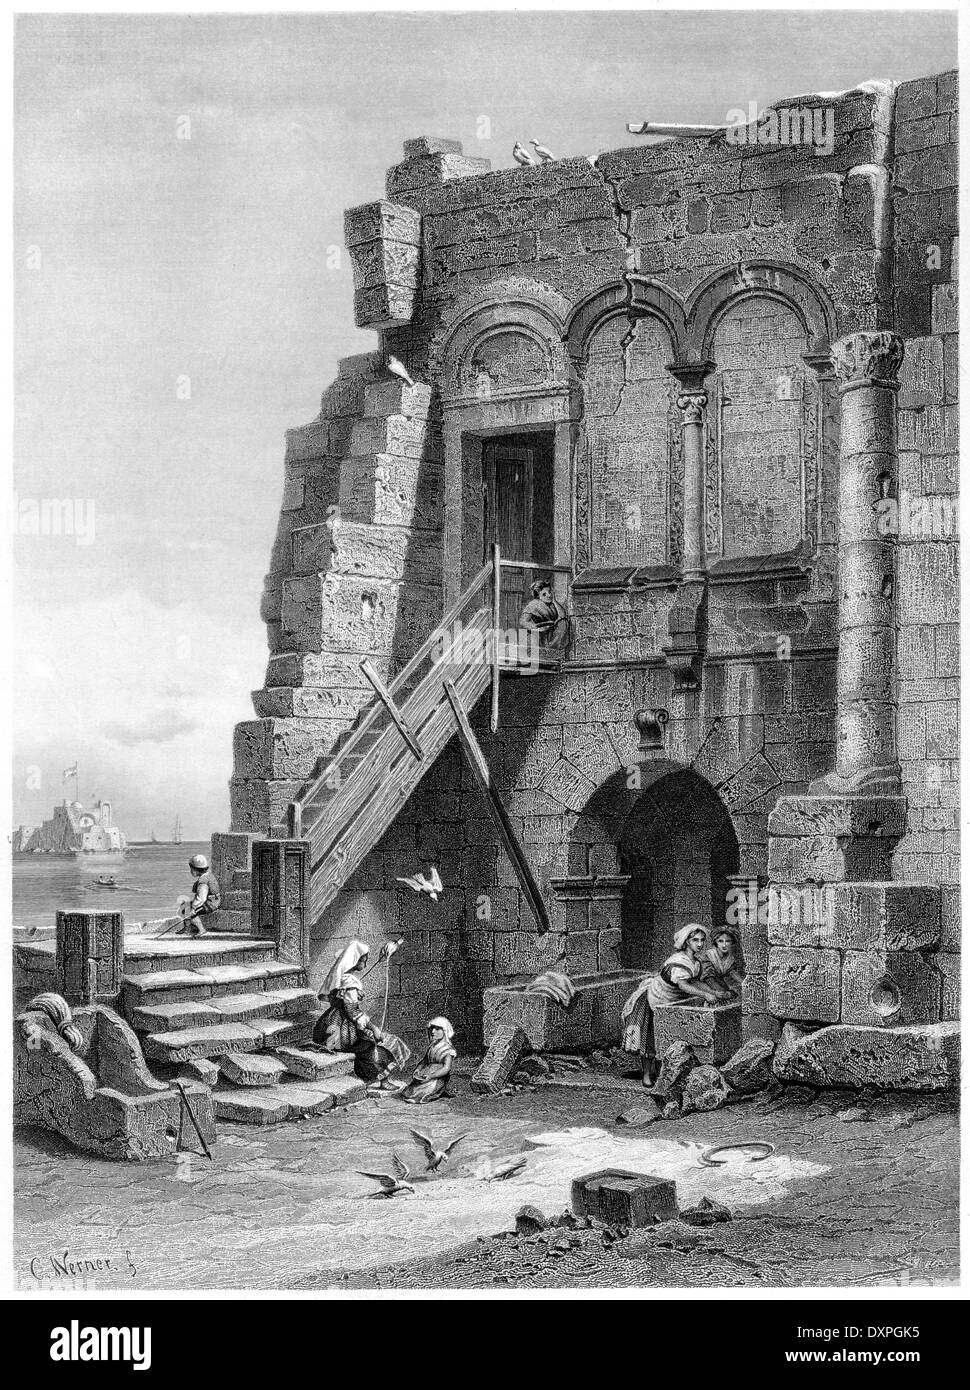 Ein Stich mit dem Titel 'Virgil's House, Brindisi' wurde in hoher Auflösung aus einem um 1878 veröffentlichten Buch gescannt. Für urheberrechtlich frei gehalten. Stockfoto